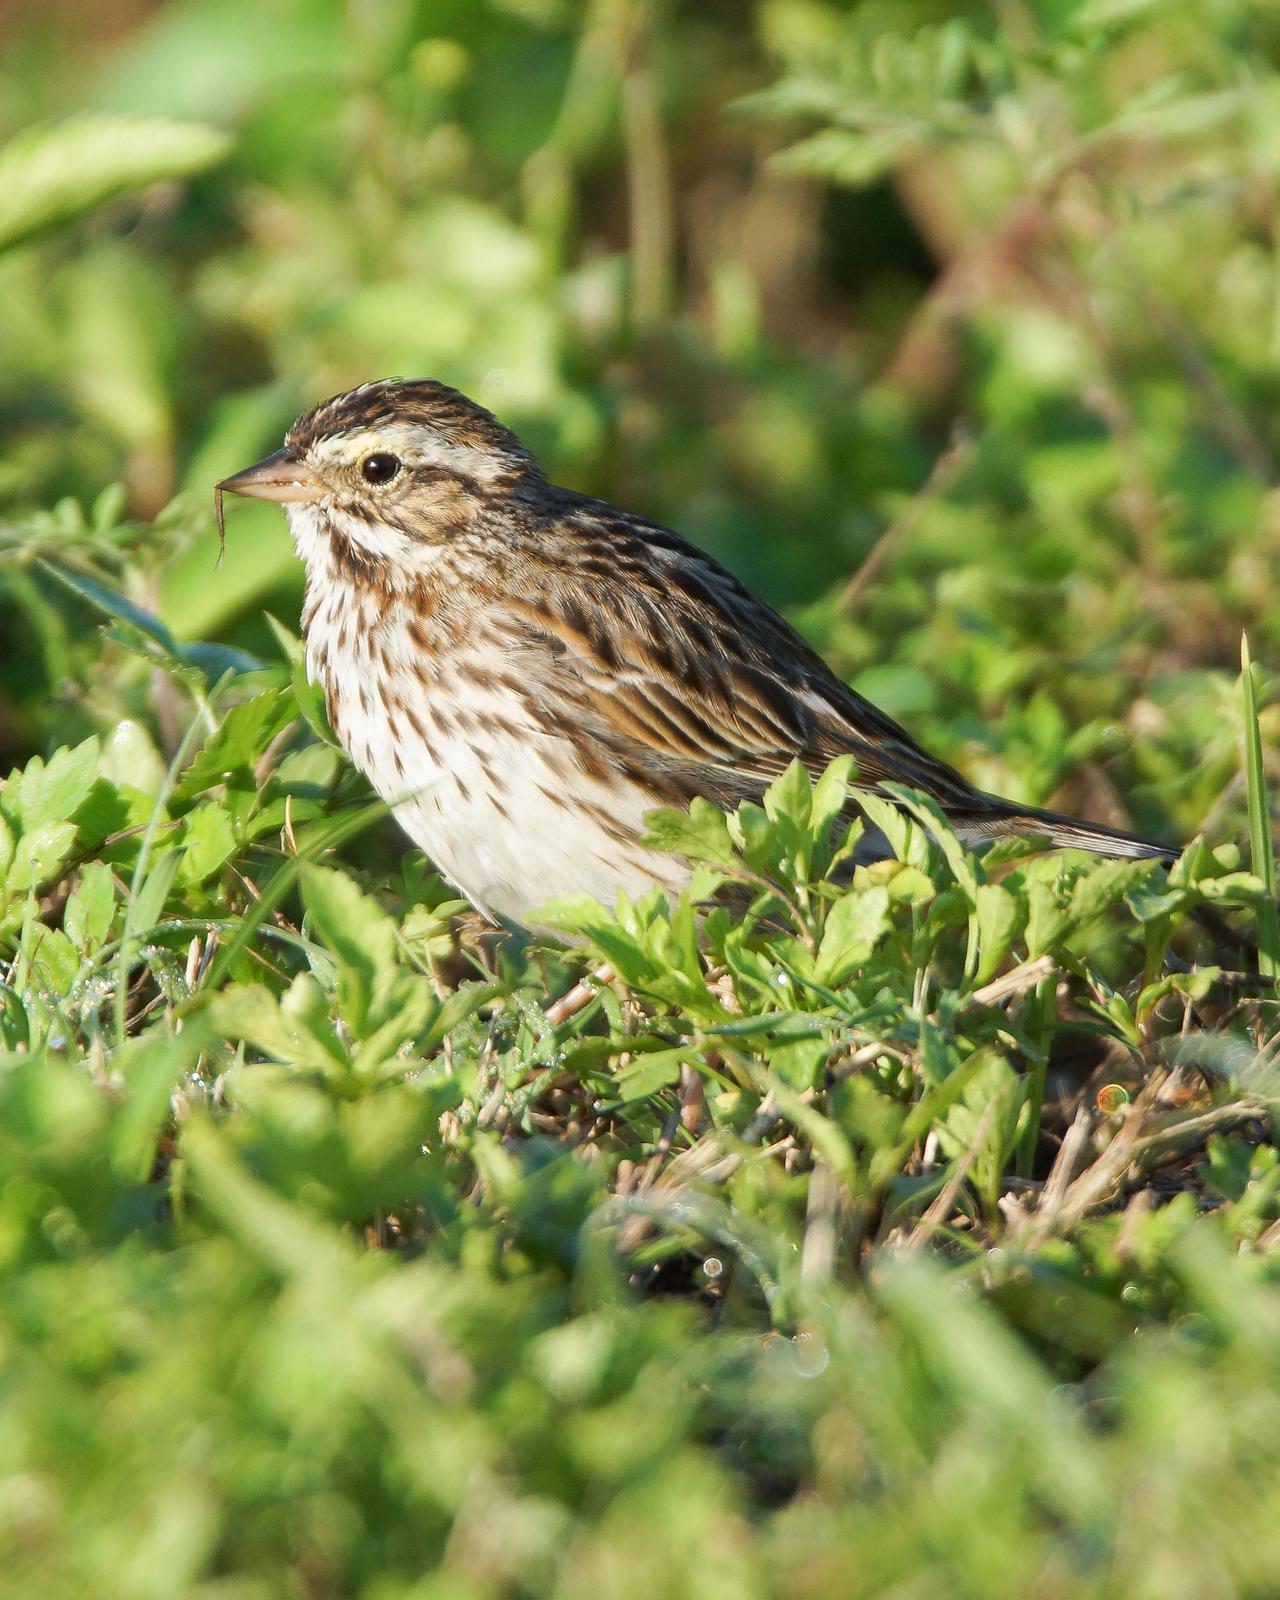 Savannah Sparrow Photo by Steve Percival